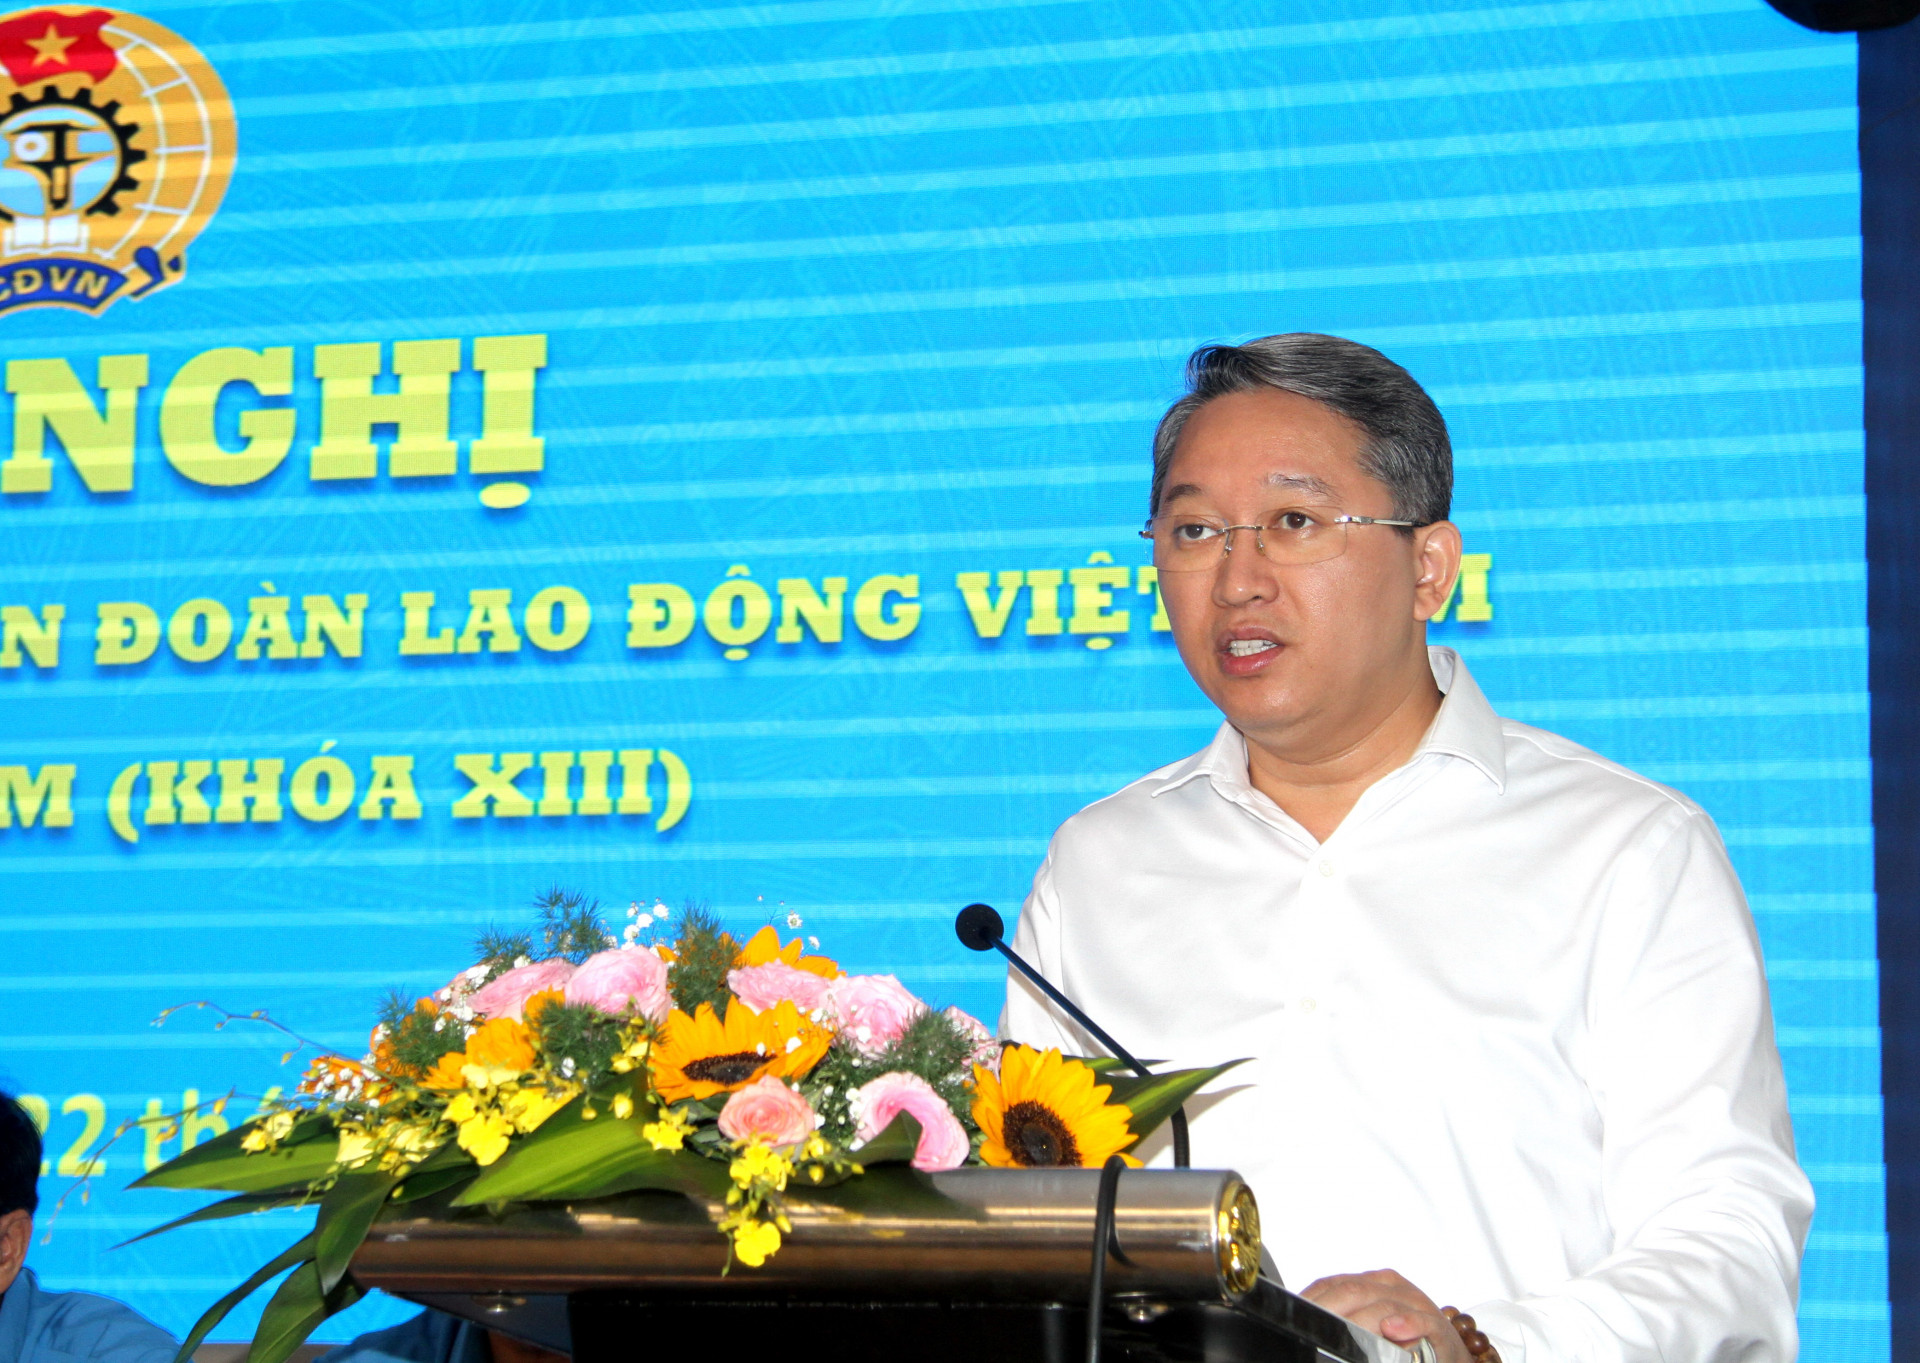 Đồng chí Nguyễn Hải Ninh phát biểu chào mừng tại hội nghị.